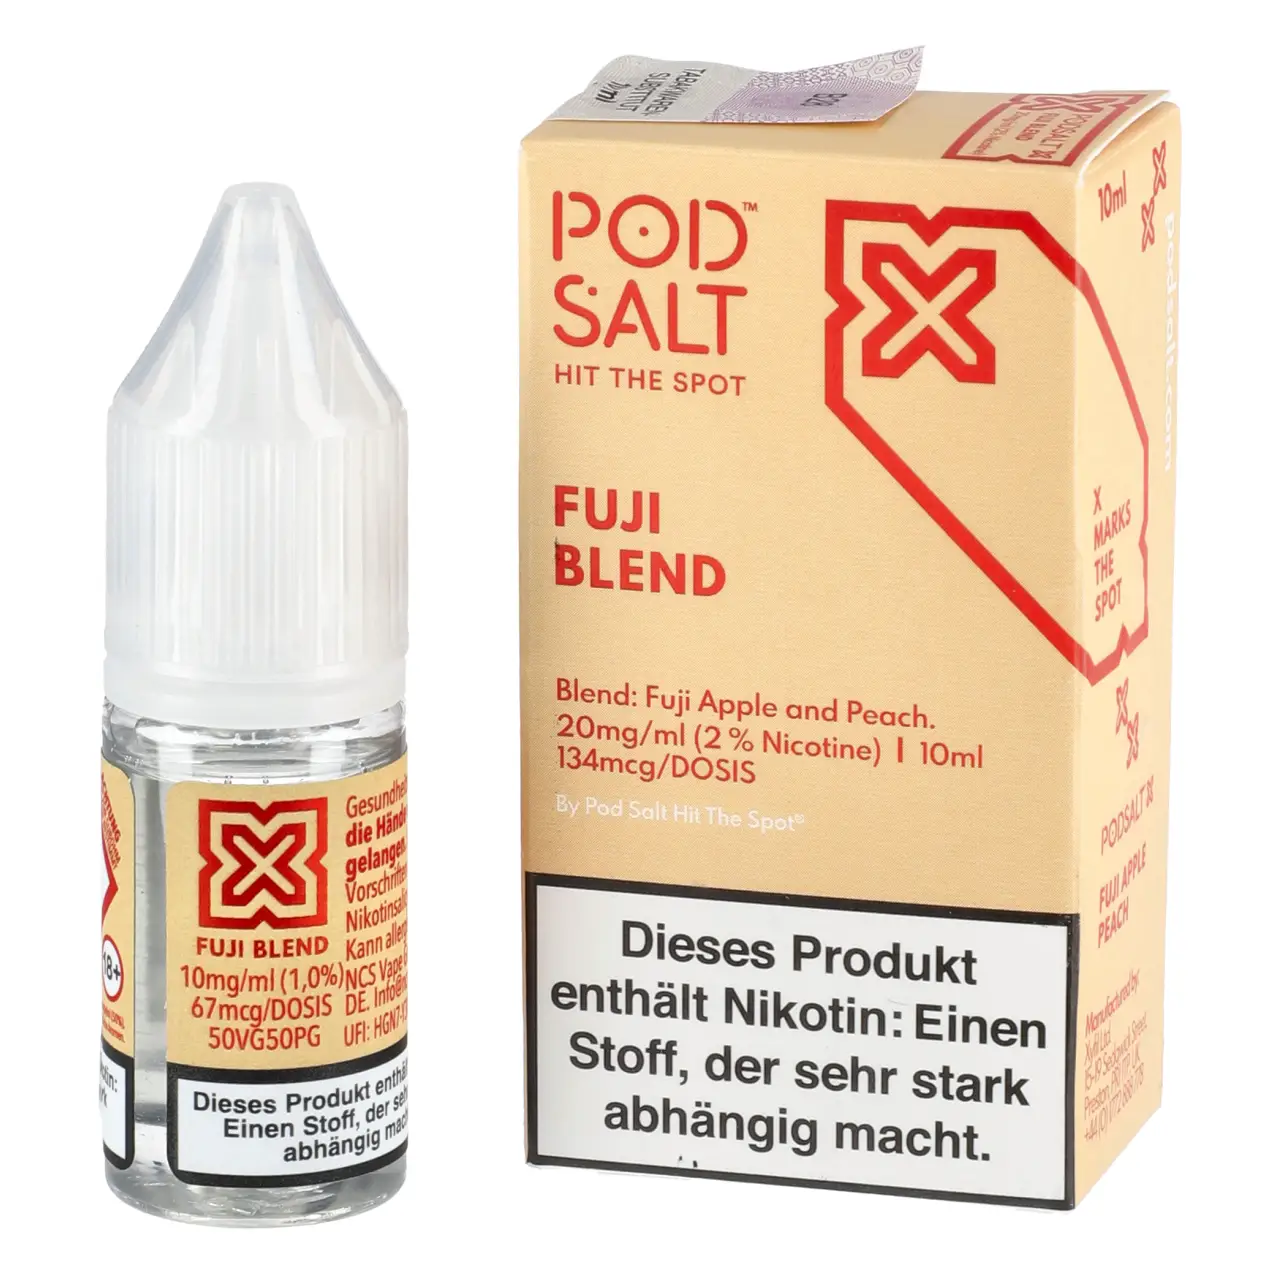 Fuji Blend - Pod Salt X Nikotinsalz Liquid Flasche 10ml